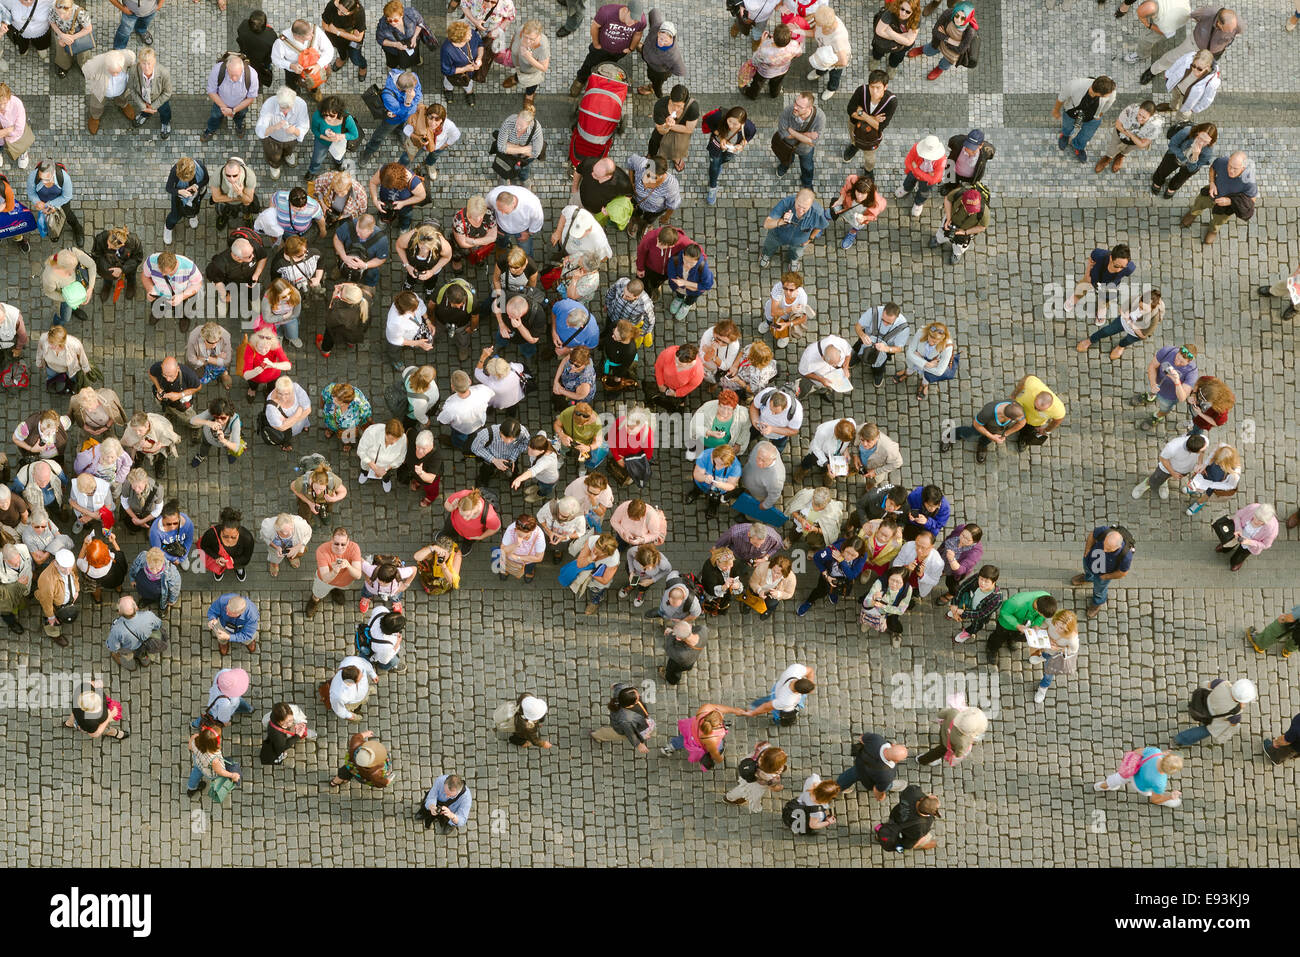 Prag, Tschechien - 9. September 2014: große Gruppe von Touristen in Prag zentrale Quadrat nach oben zum Turm des alten Rathauses. Stockfoto